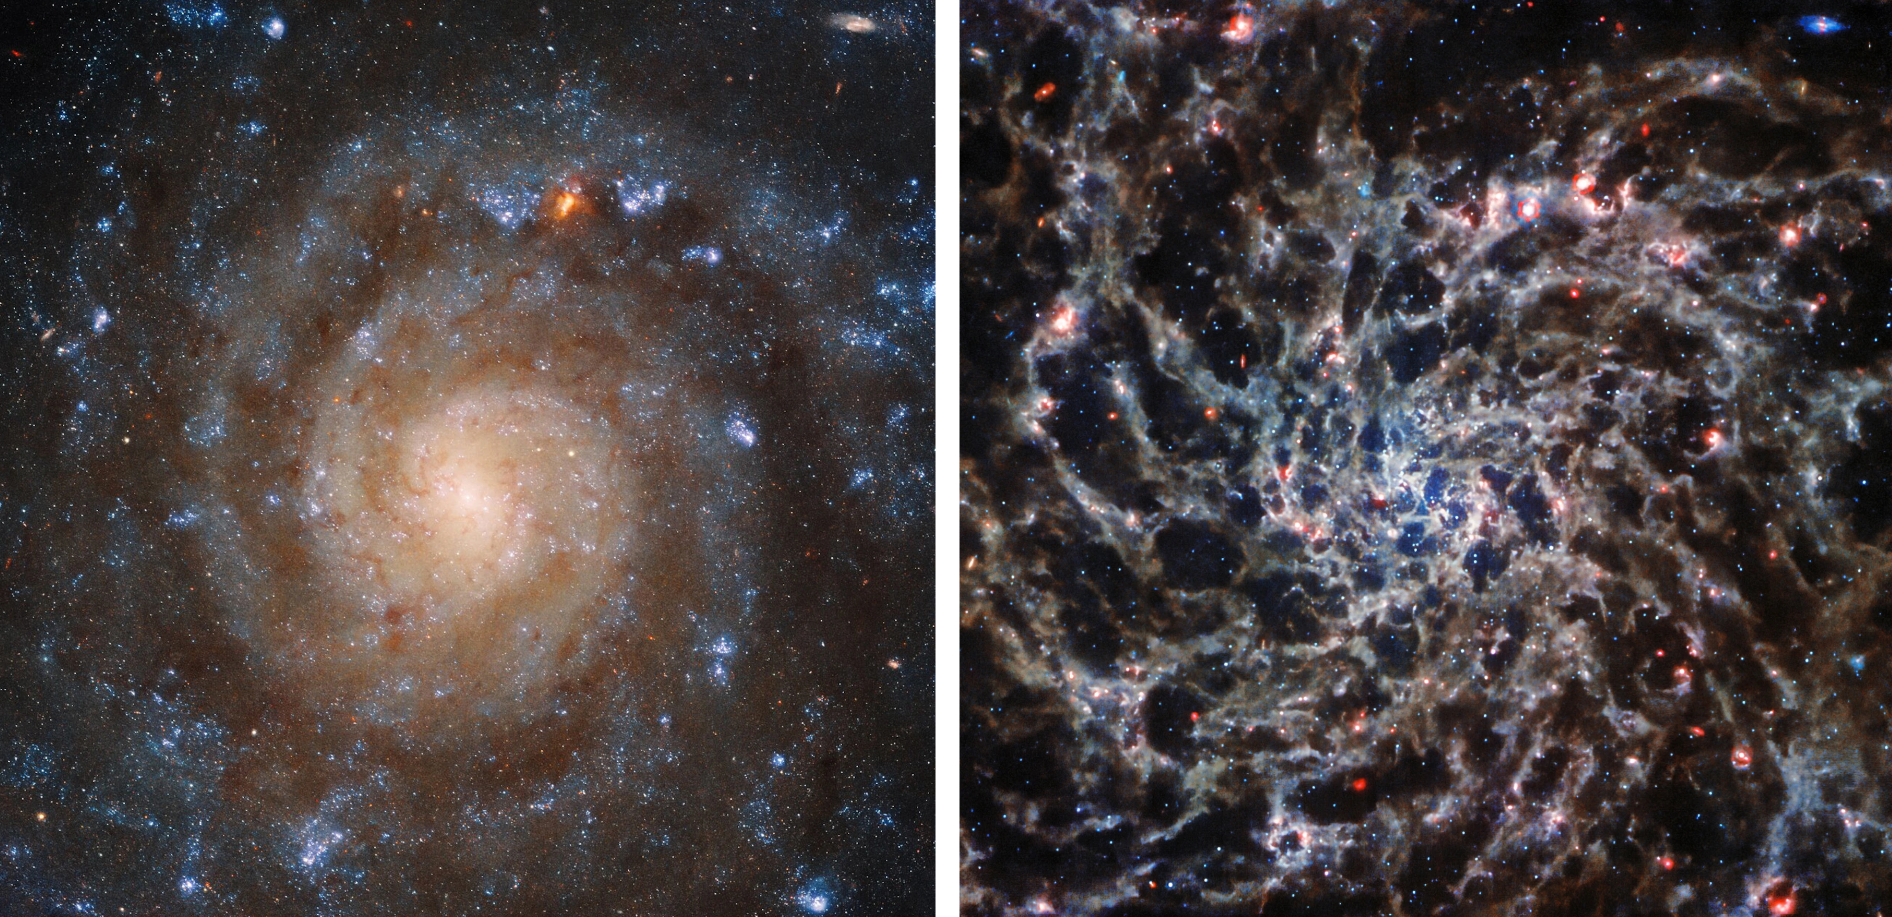 سمت چپ: ساختار مارپیچی پیچ در پیچ کهکشان IC 5332 در نور ماوراء بنفش و مرئی که توسط تلسکوپ فضایی هابل گرفته شده است آشکار می شود. به نظر می رسد مناطق تاریک و غبارآلود بازوهای مارپیچی را از هم جدا می کنند. راست: با استفاده از ابزار مادون قرمز میانی Webb (MIRI)، همان مناطق گرد و غباری دیگر تاریک نیستند. وب قادر است از میان گرد و غبار نگاه کند و "استخوان های" کهکشان را ببیند. تصویر توسط ESA/WEBB، NASA و CSA، J. LEE و تیم های PHANGS-JWST و PHANGS-HST